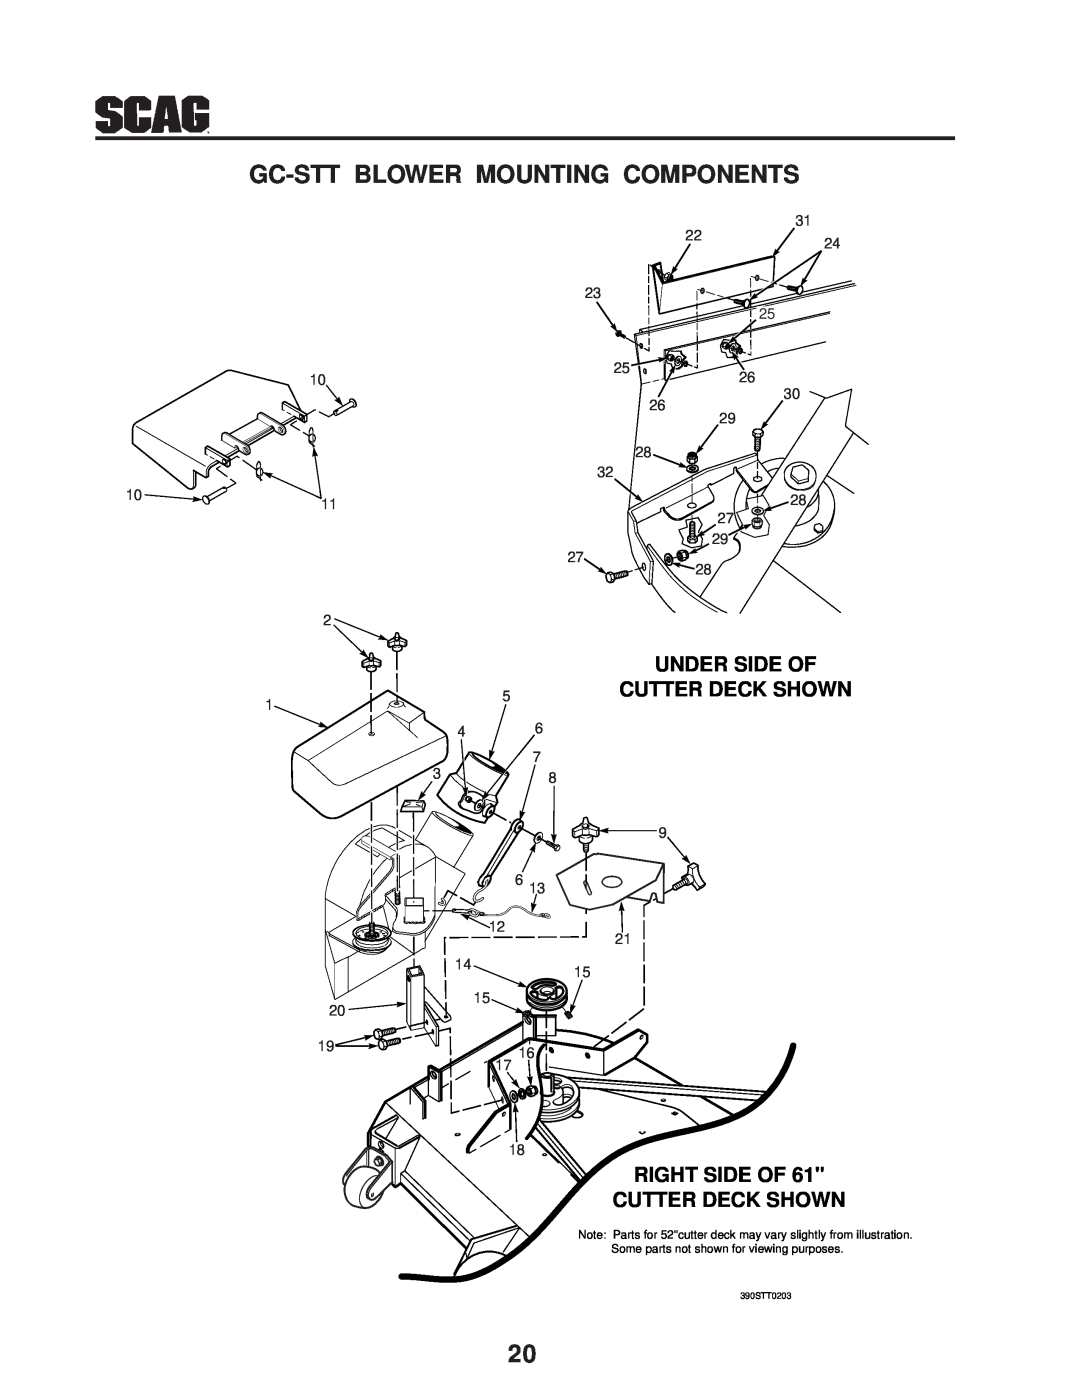 Scag Power Equipment GC-STT-CS manual Gc-Stt Blower Mounting Components, Under Side Of Cutter Deck Shown, 390STT0203 